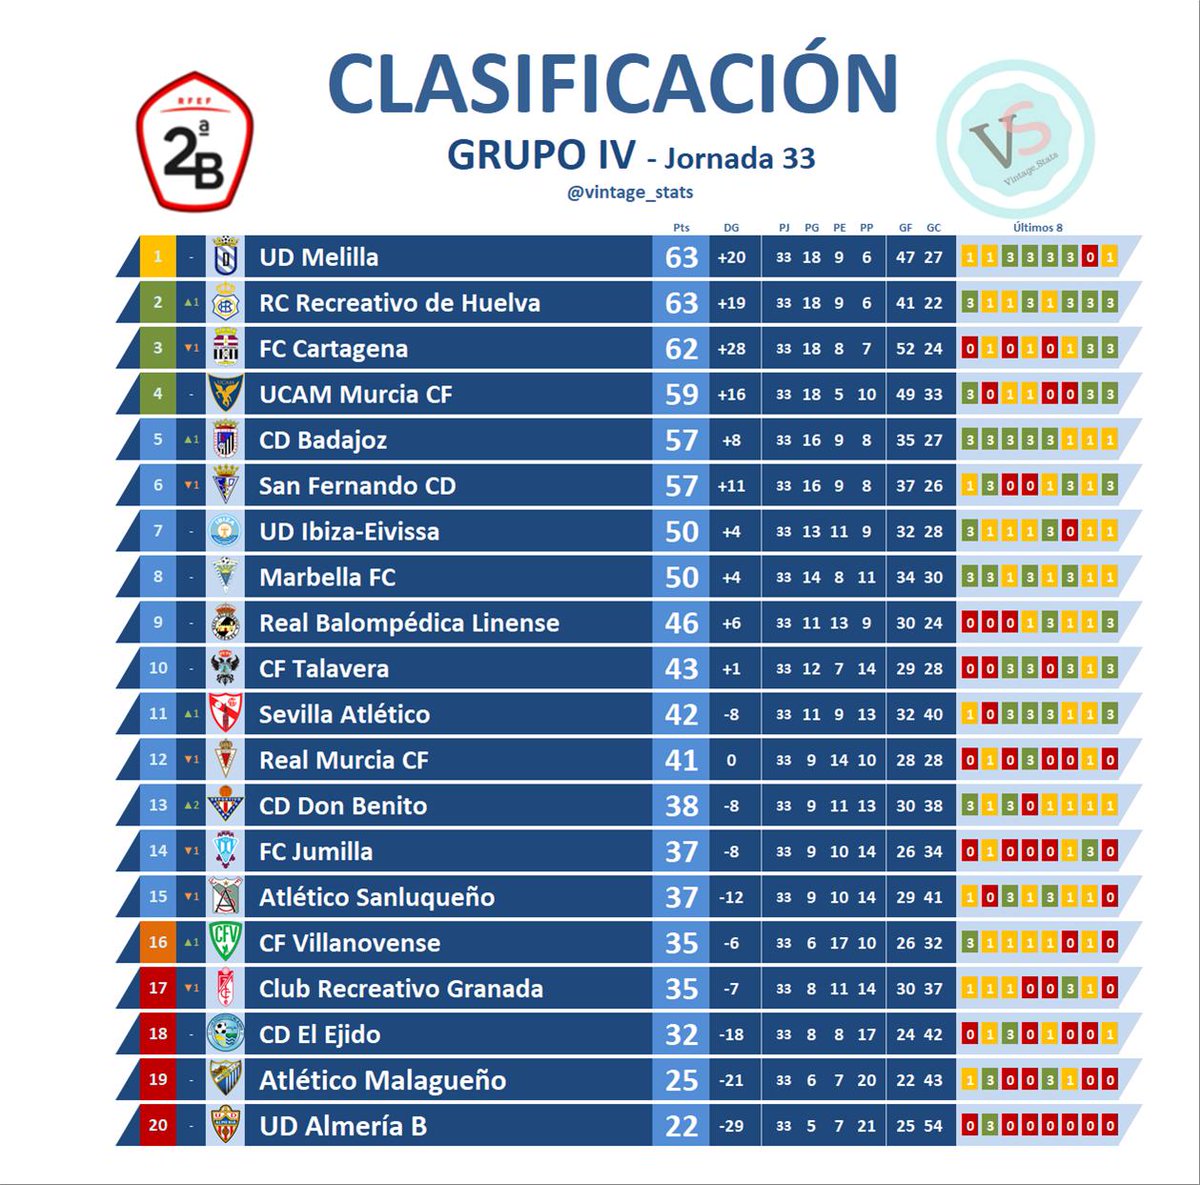 Hincha Talavera 🏺💙 on "Así la clasificación de Segunda División B Grupo IV tras la disputa de la Jornada 33 / Twitter